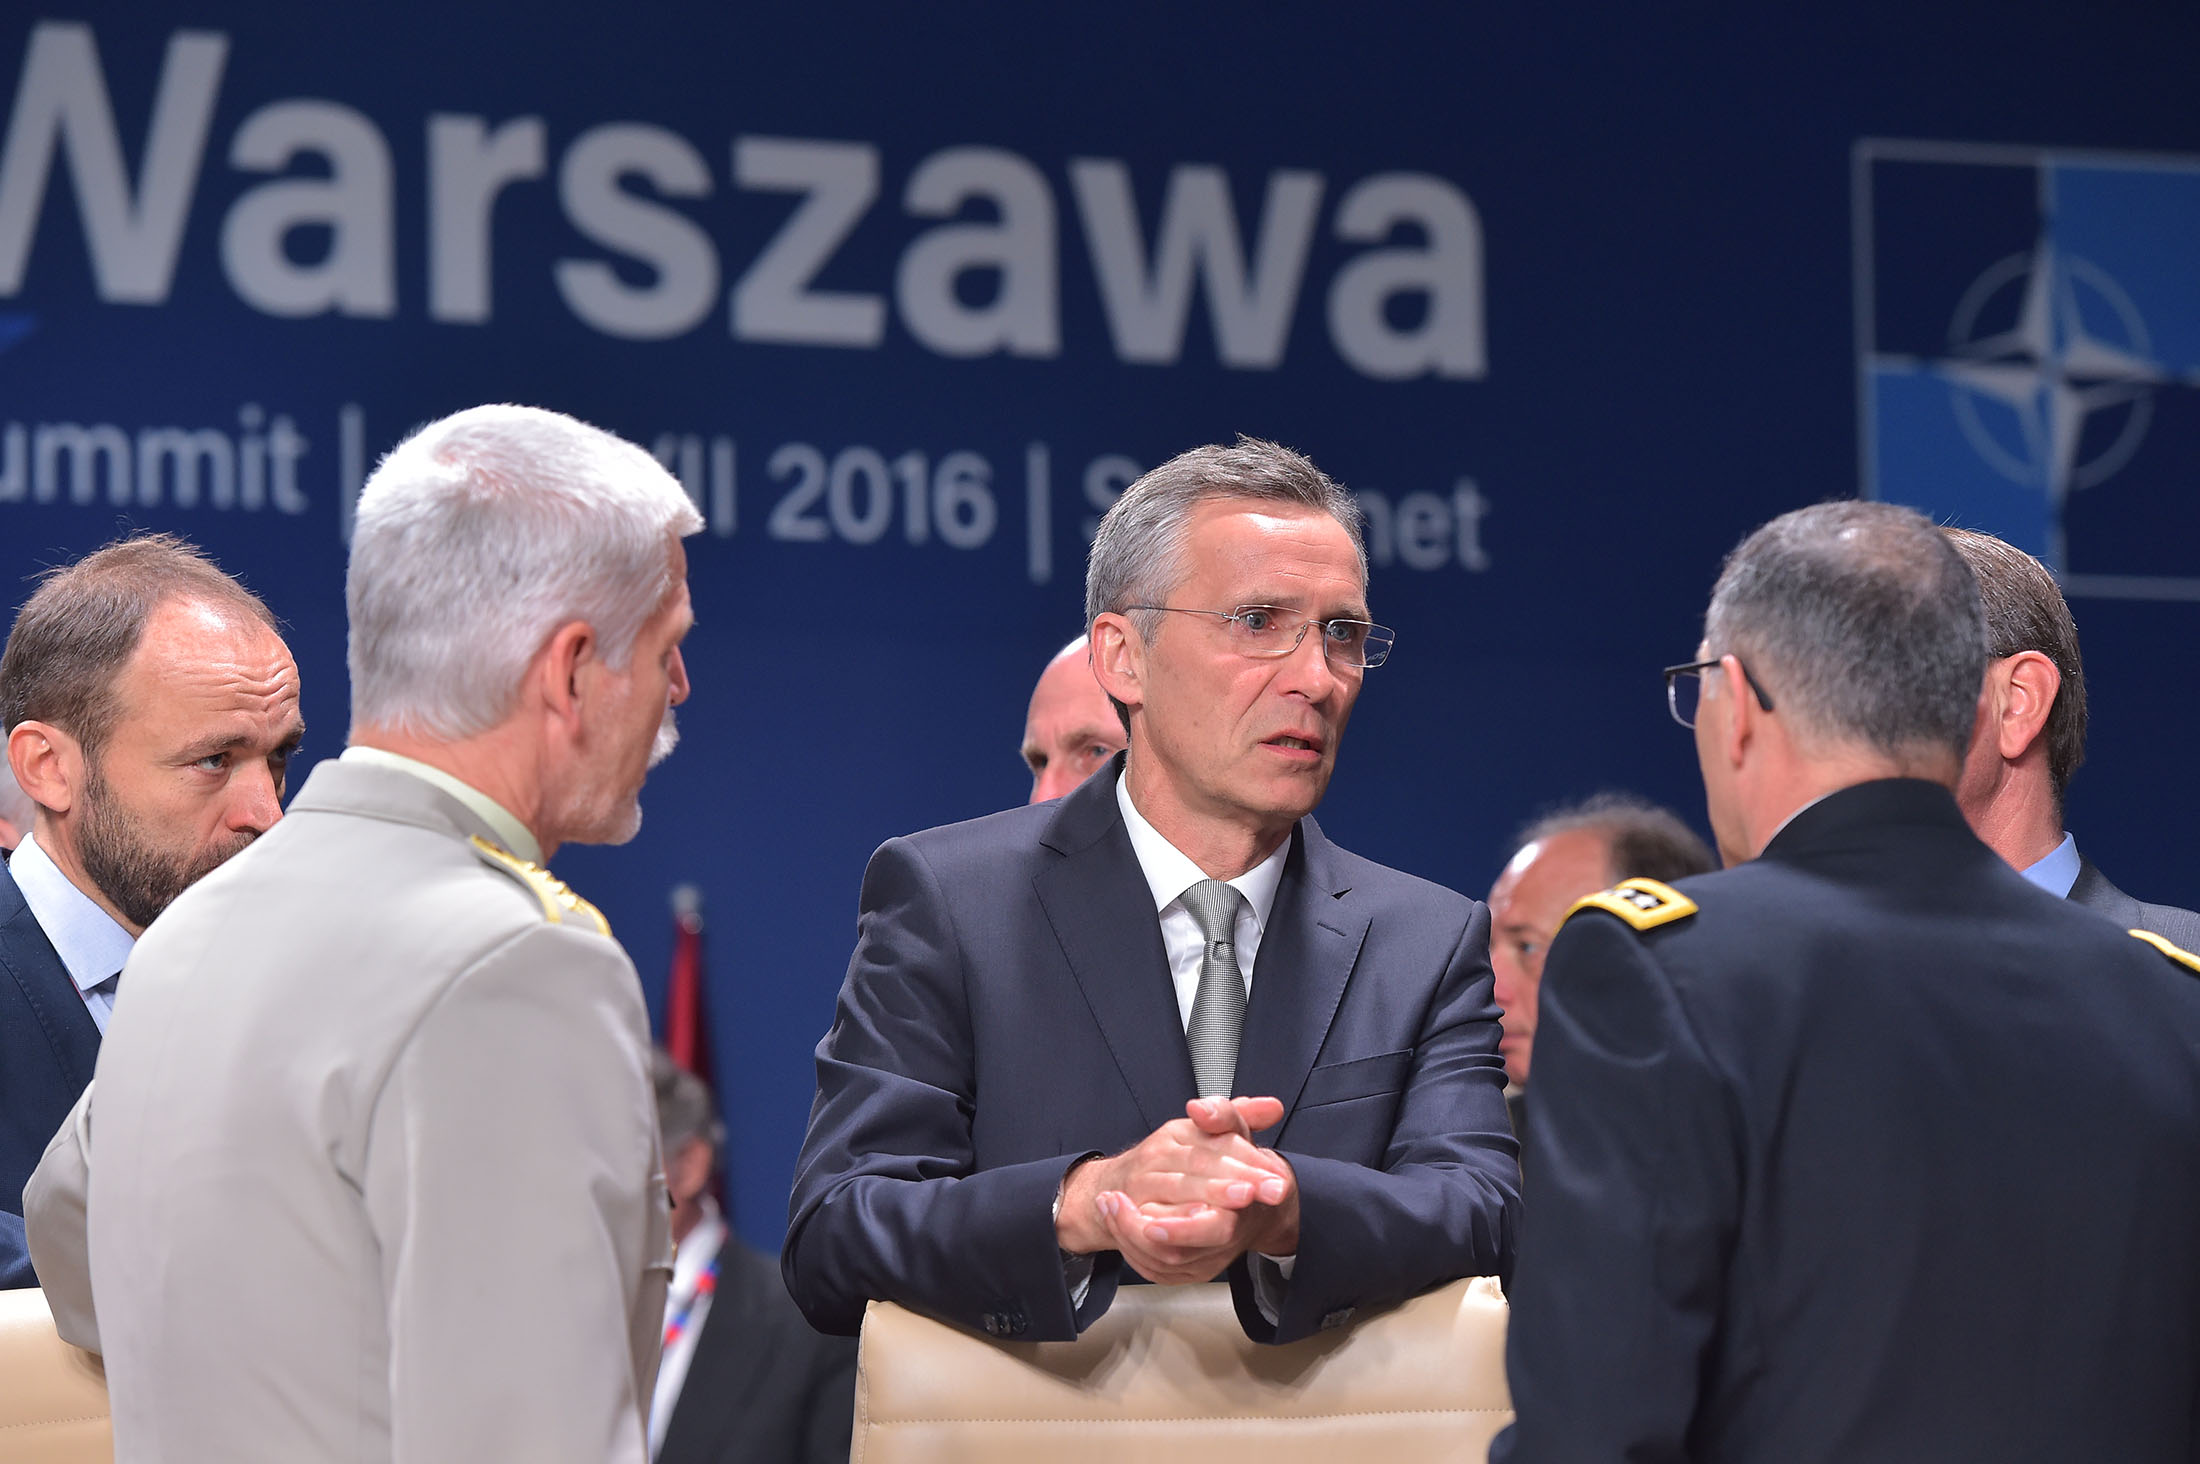 NATO 12 новости Варшава, Грузия, НАТО, Россия, саммит, украина